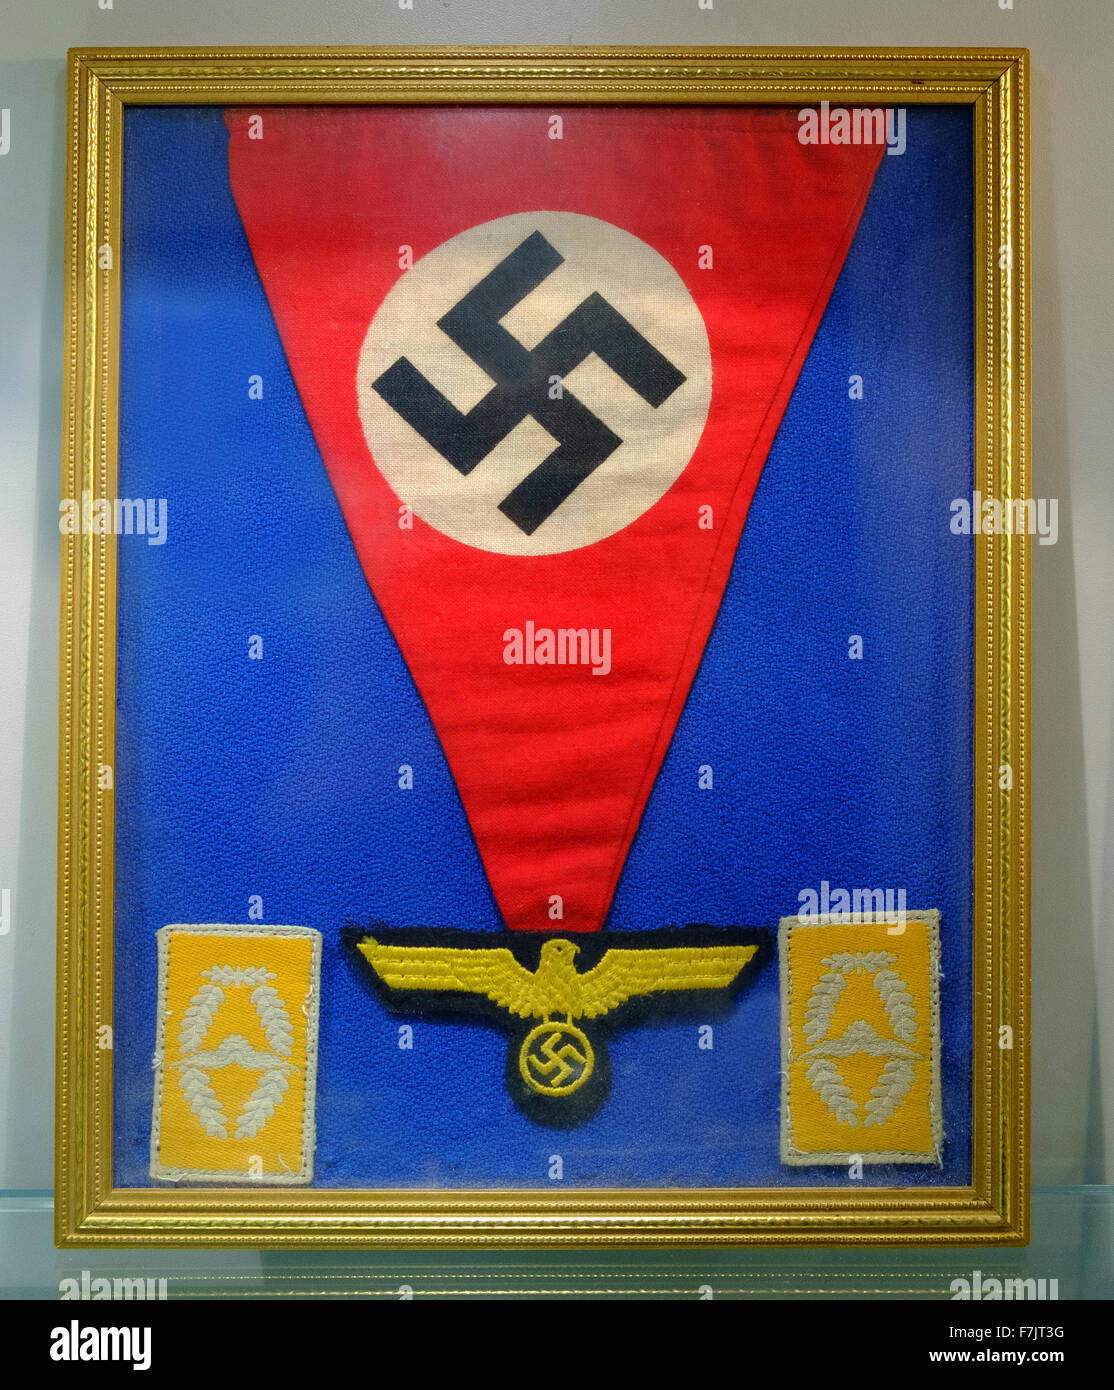 Croix gammée nazie fanion drapeau symbole insigne eagle Banque D'Images